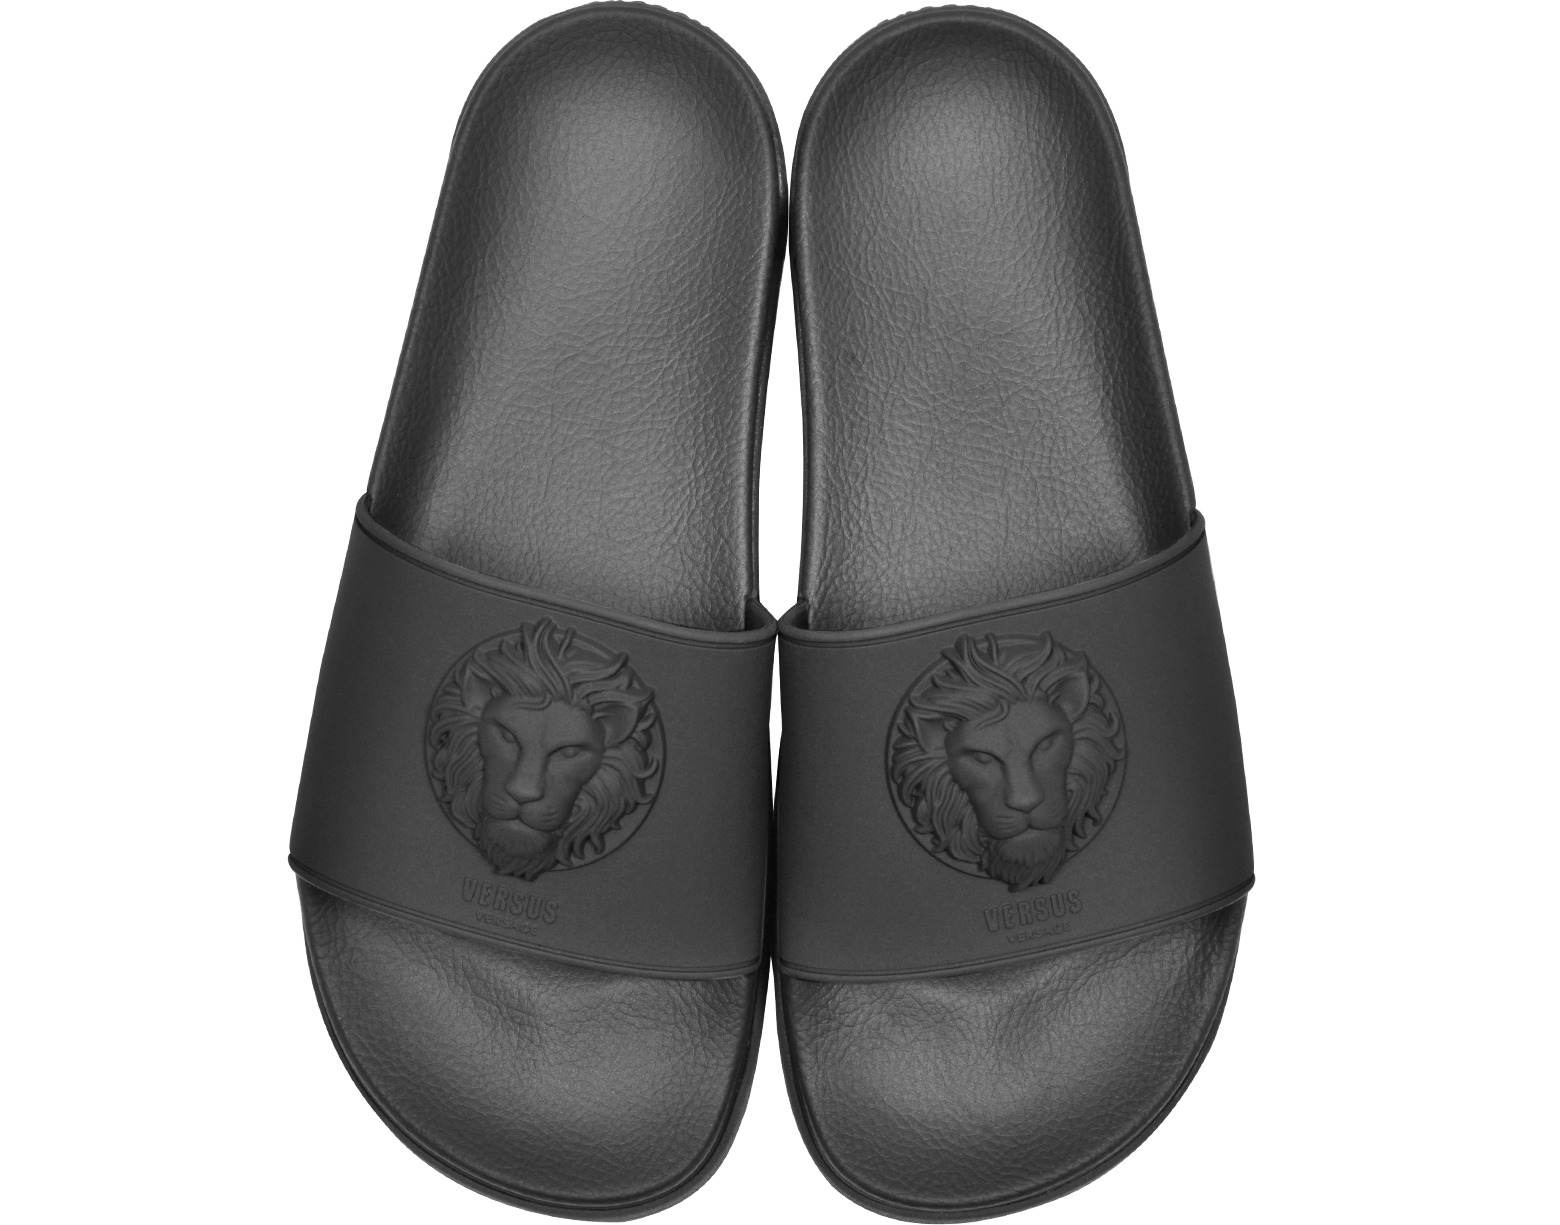 versace men's slide sandals